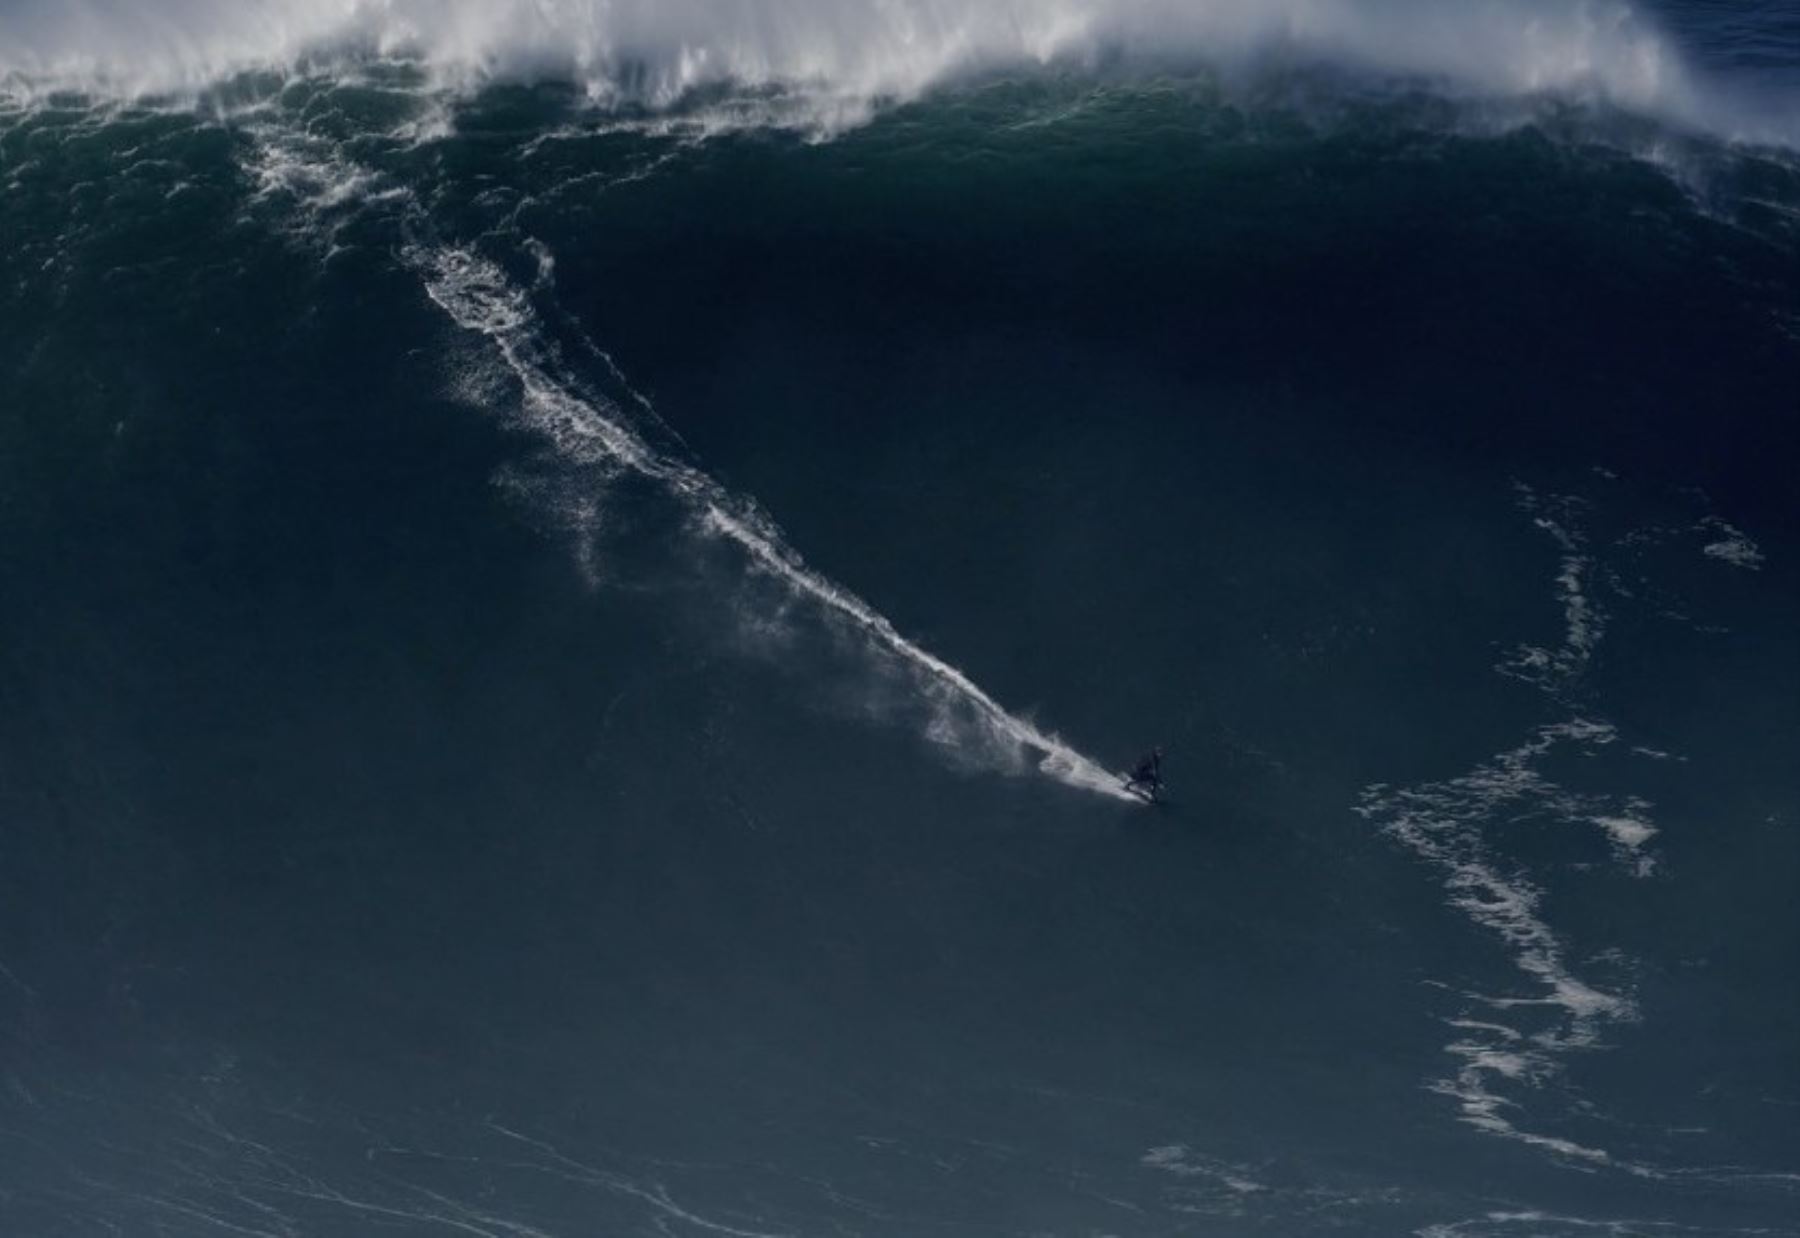 El Libro Guiness de los Récords ha certificado que el alemán Sebastian Steudtner posee el récord de surfear la ola más grande del mundo, de 26,21 metros de altura